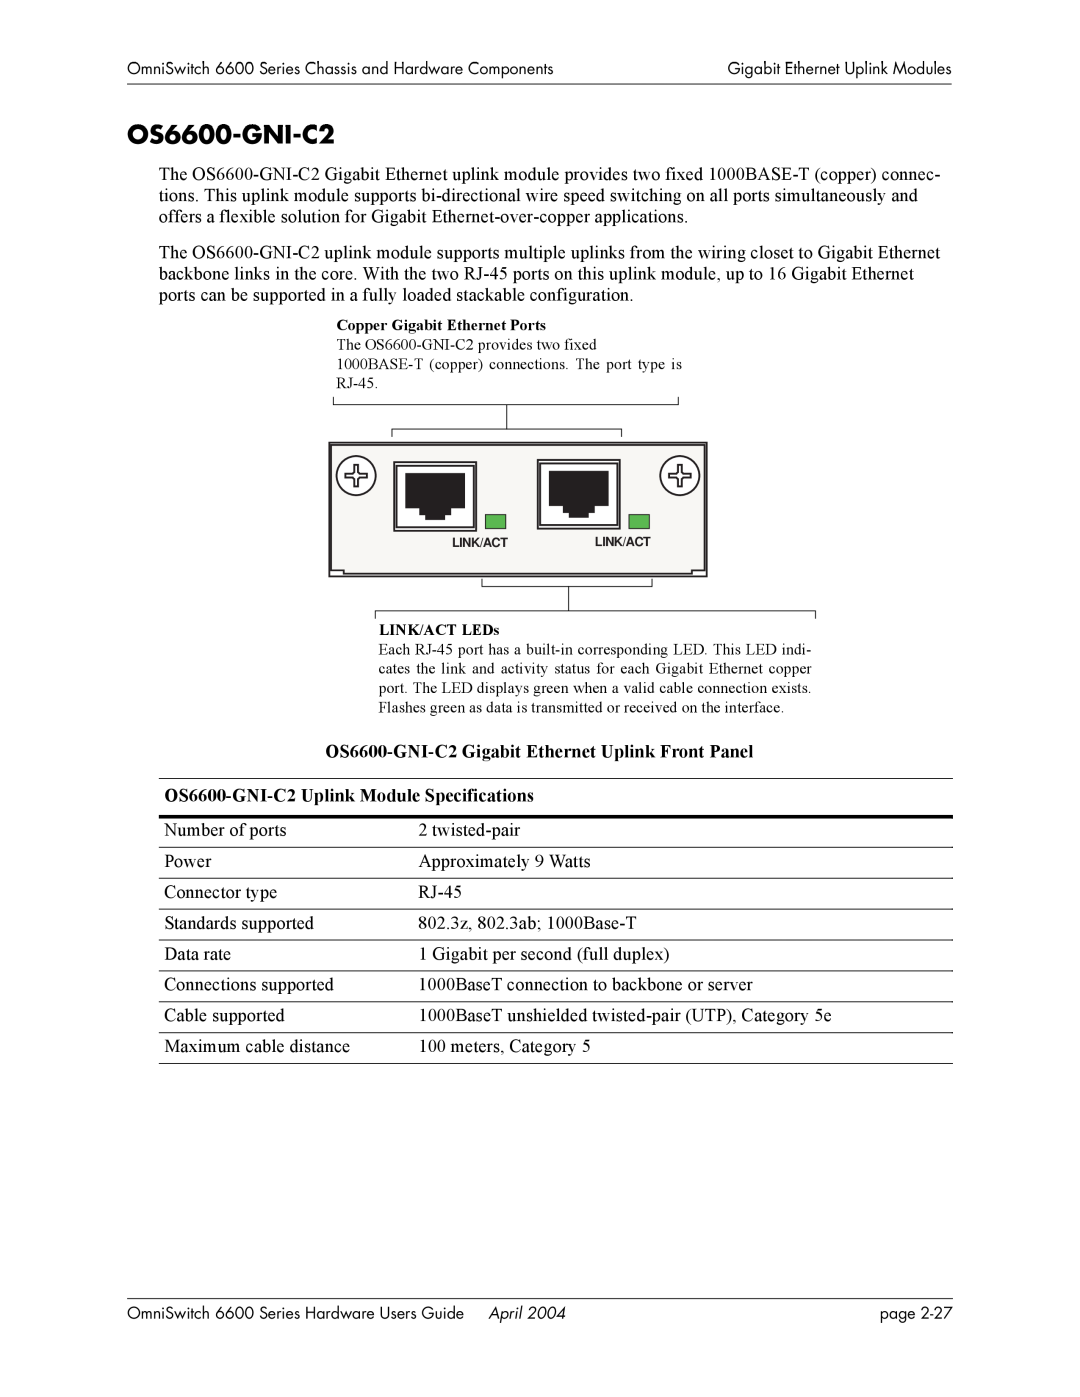 Alcatel-Lucent 6600 Series, 6648, 6624 manual OS6600-GNI-C2 Gigabit Ethernet Uplink Front Panel 